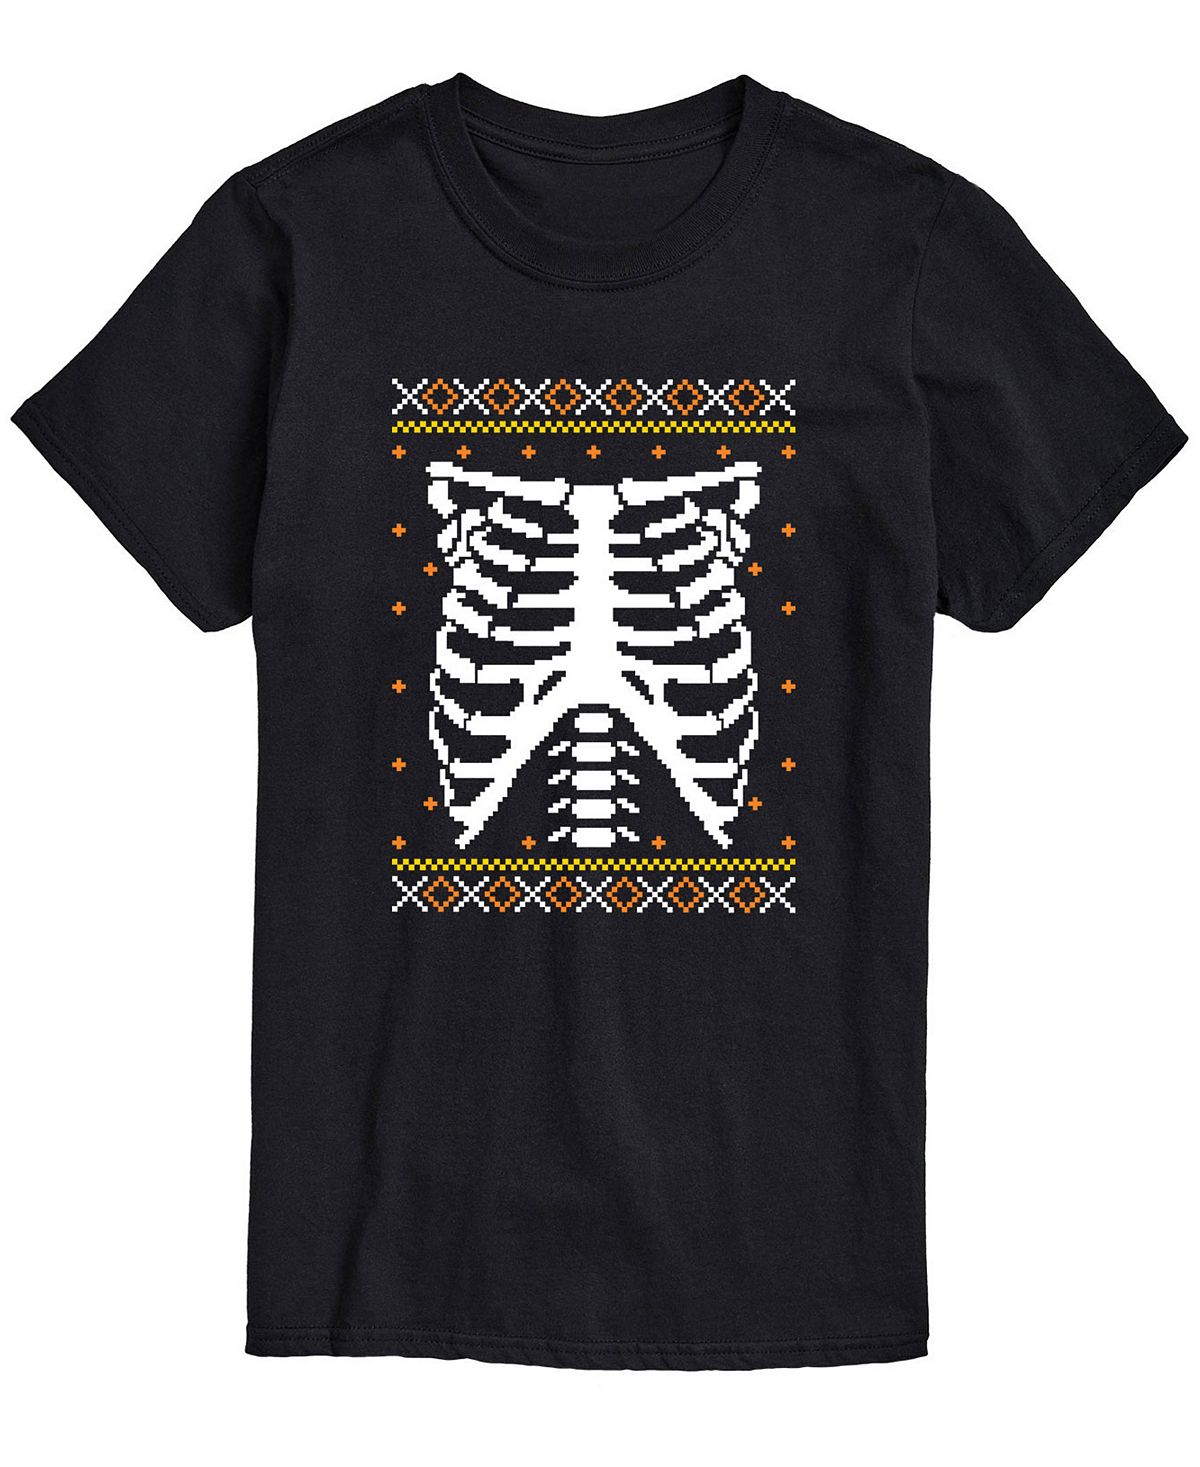 Мужская футболка классического кроя skeleton chest AIRWAVES, черный